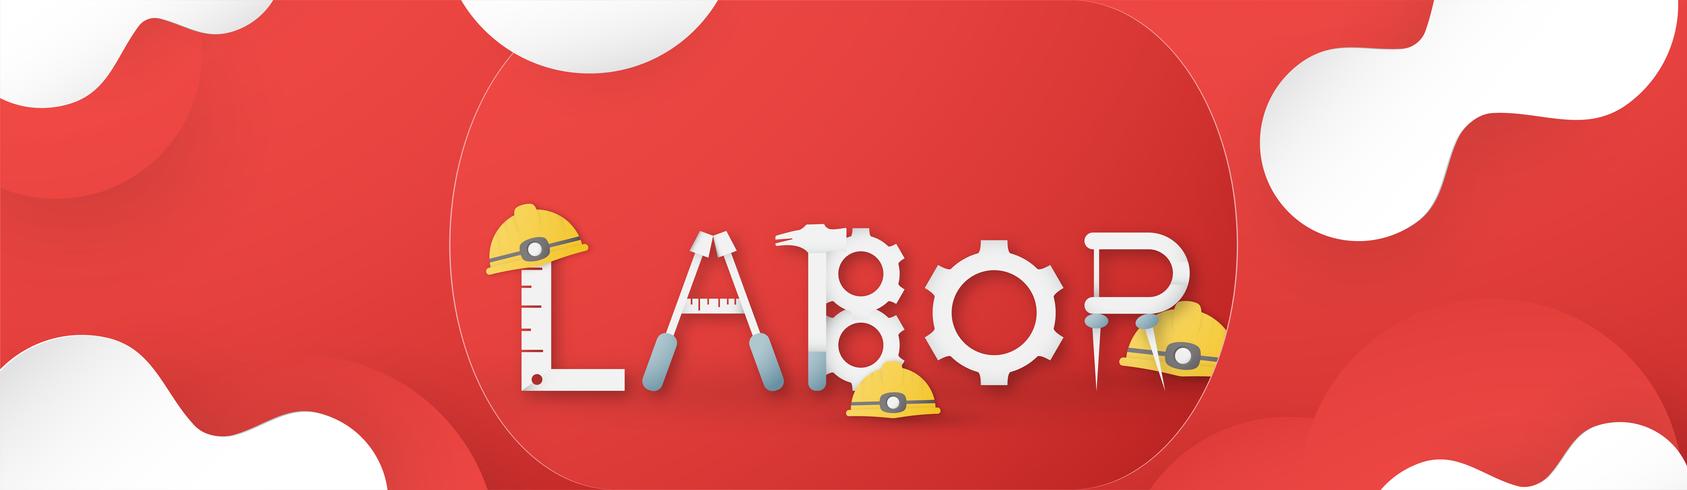 Happy Labor Day op 1 mei van jaren. Sjabloonontwerp voor banner, poster, dekking, advertentie, website. Vector illustratie in papier knippen en ambachtelijke stijl op rode achtergrond.